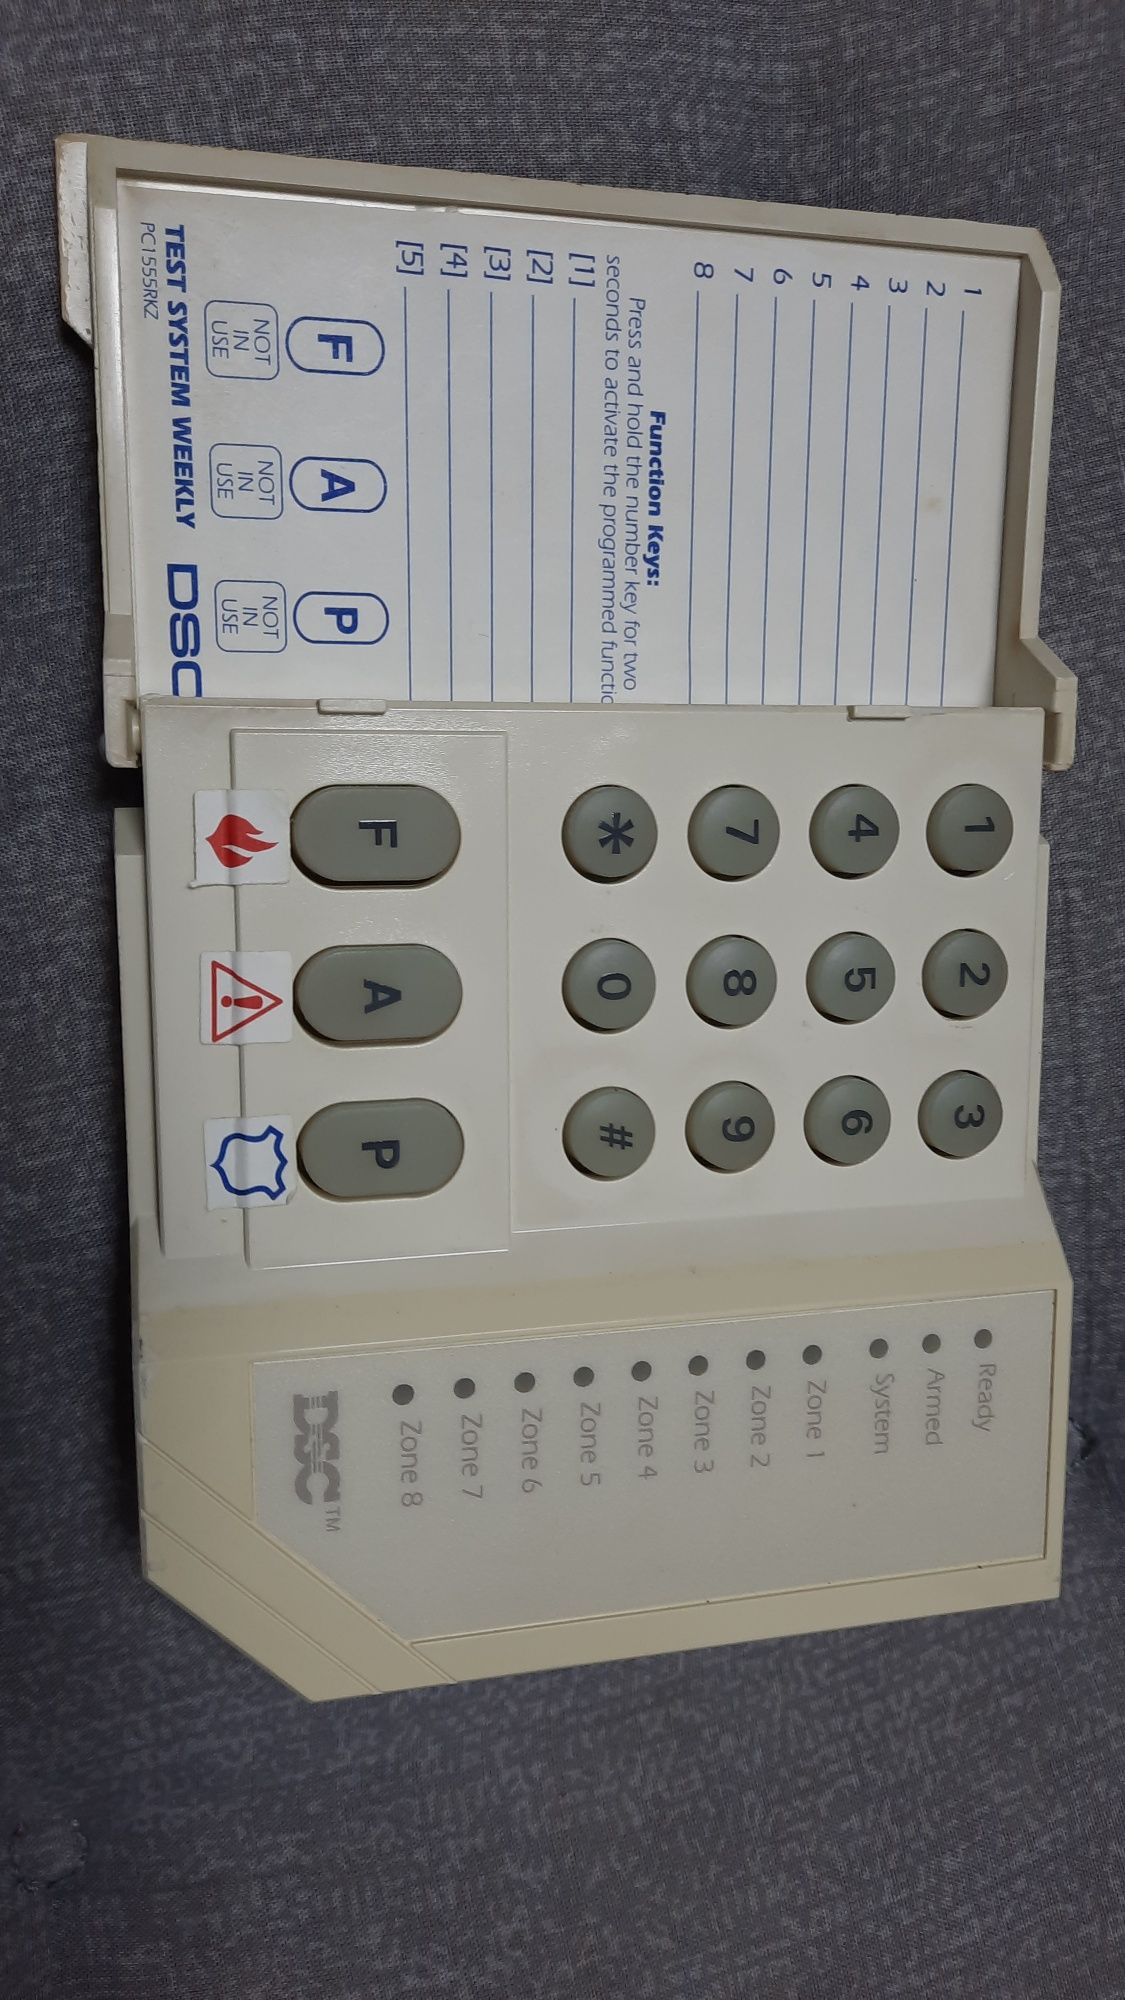 Tastatura alarma DSC PC1555RKZ, utilizata